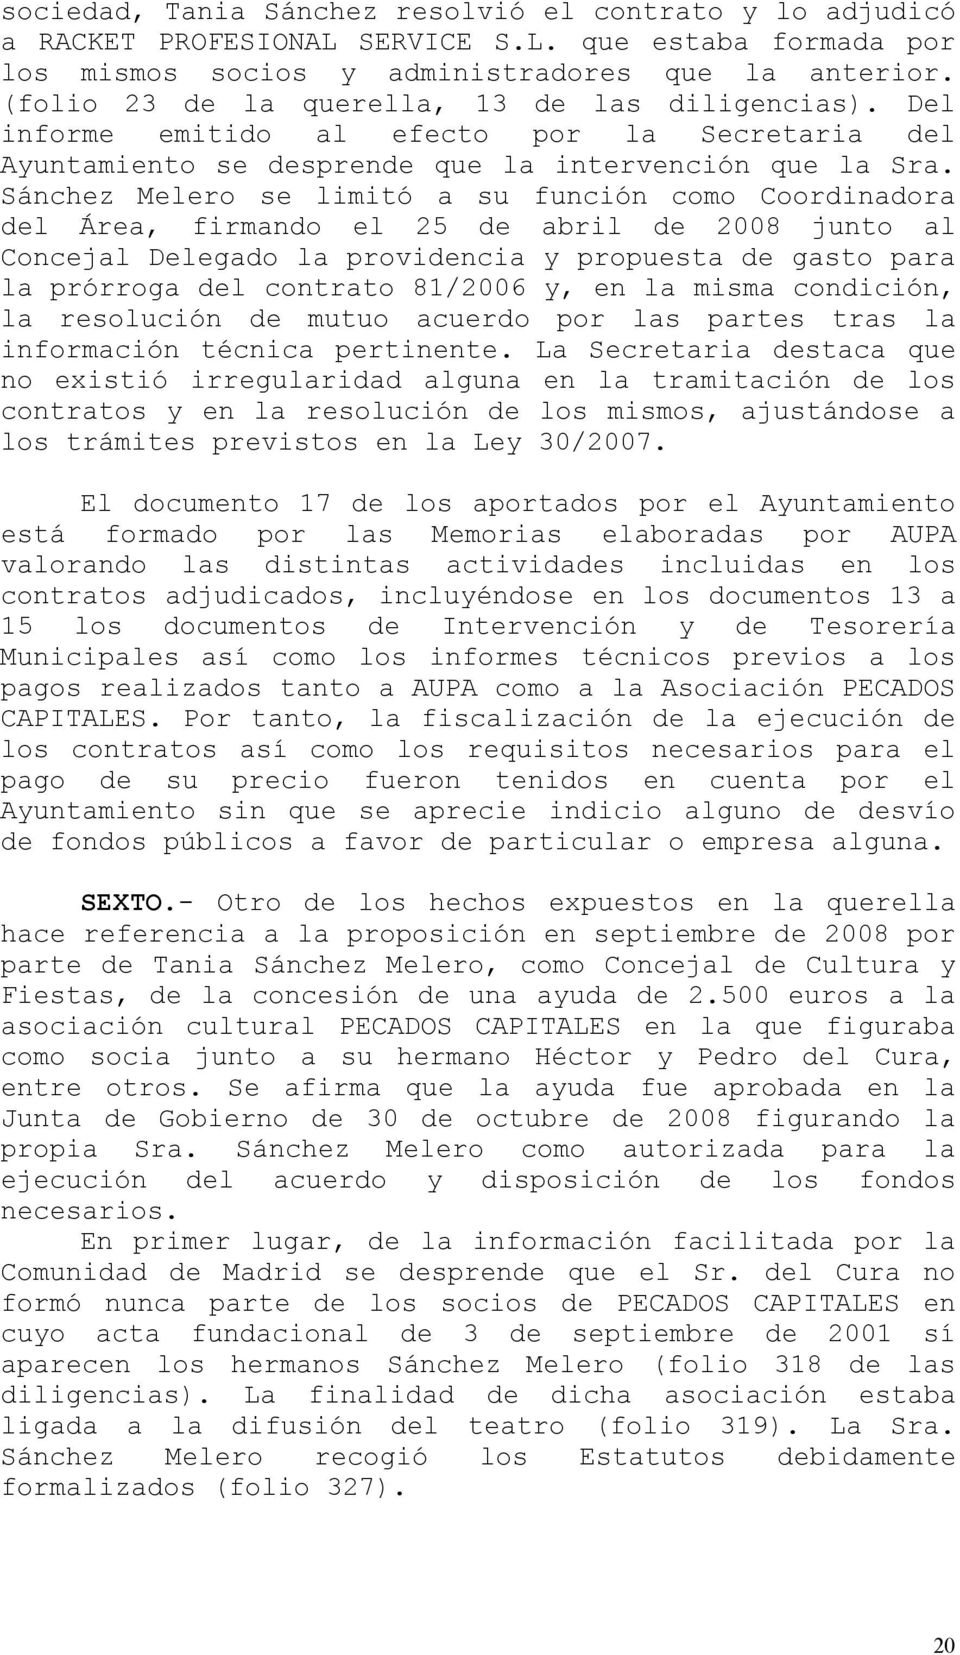 Sánchez Melero se limitó a su función como Coordinadora del Área, firmando el 25 de abril de 2008 junto al Concejal Delegado la providencia y propuesta de gasto para la prórroga del contrato 81/2006